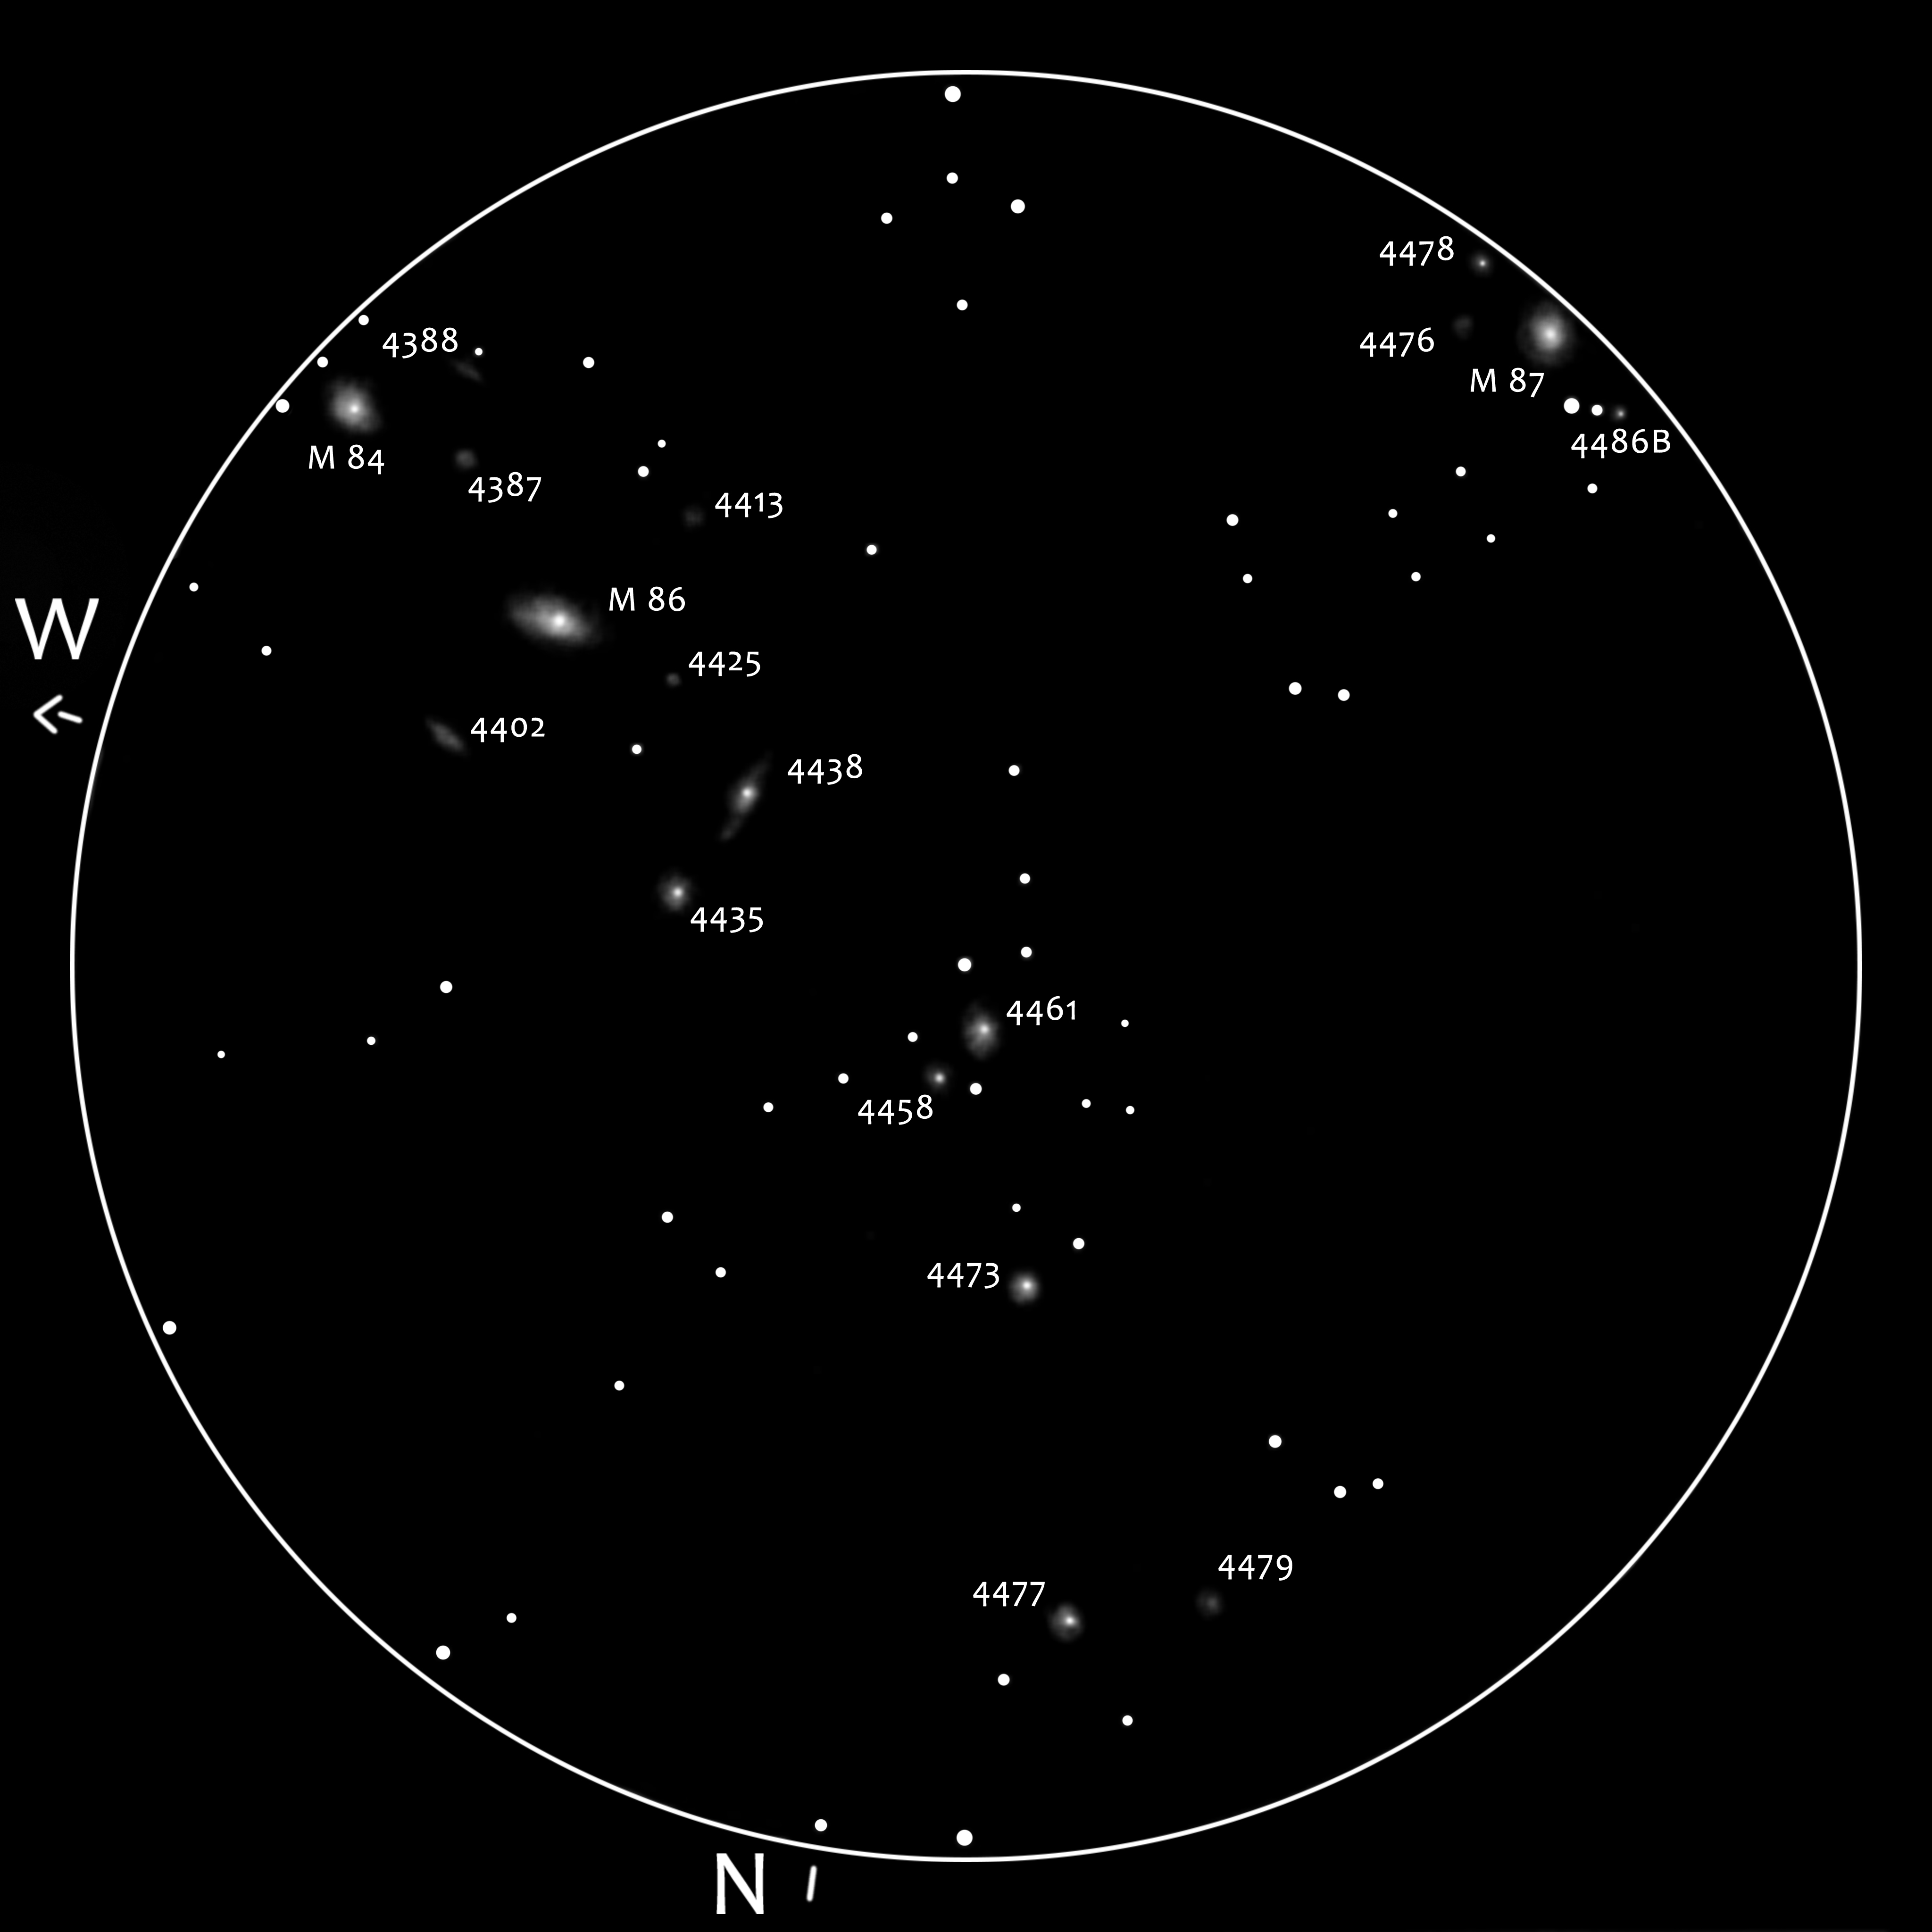 M84, M86, M87, NGC 4387, NGC 4388, NGC 4402, NGC 4413, NGC 4425, NGC 4435, NGC 4438, NGC 4458, NGC 4461, NGC 4473, NGC 4476, NGC 4477, NGC 4478, NGC 4479, NGC 4486B